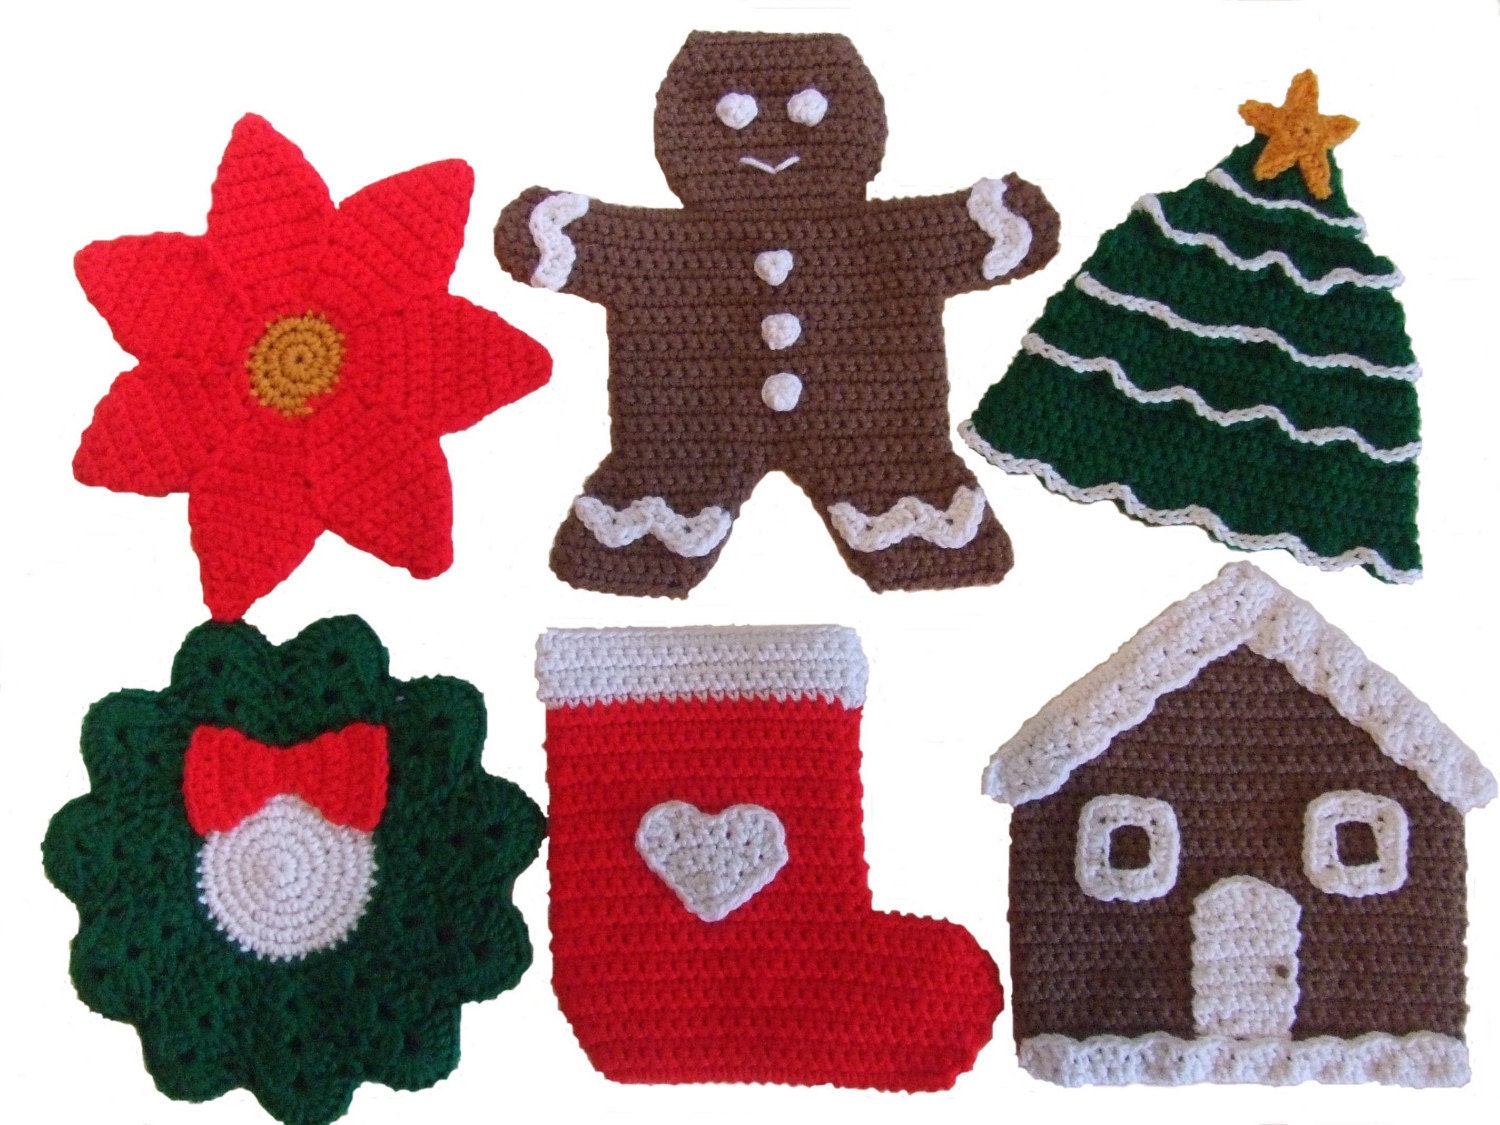 http://www.etsy.com/listing/87580290/crochet-pattern-christmas-potholders?ref=related-2